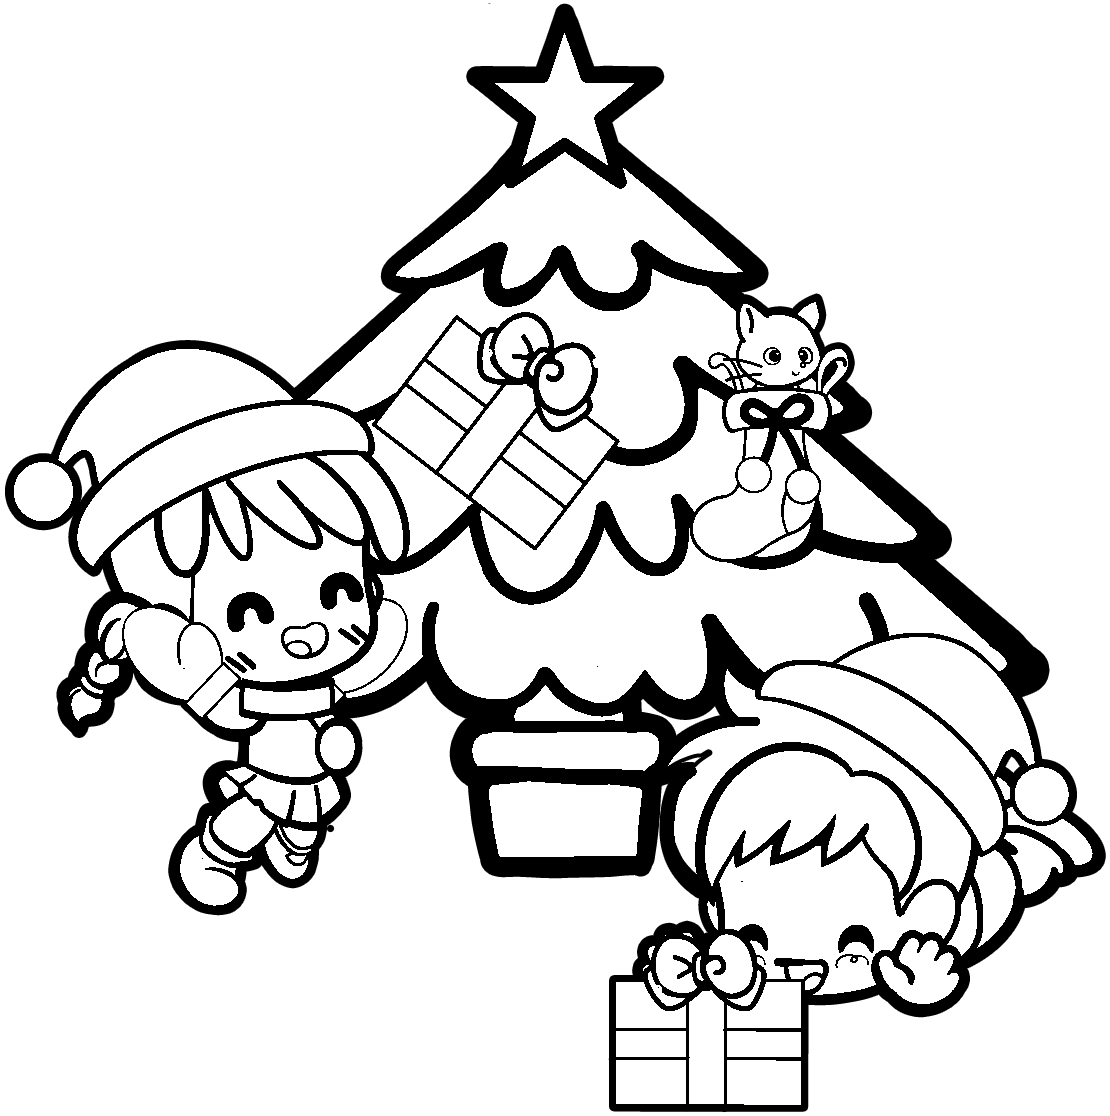 クリスマスにプレゼントをもらって喜ぶ子どもたちの白黒イラスト